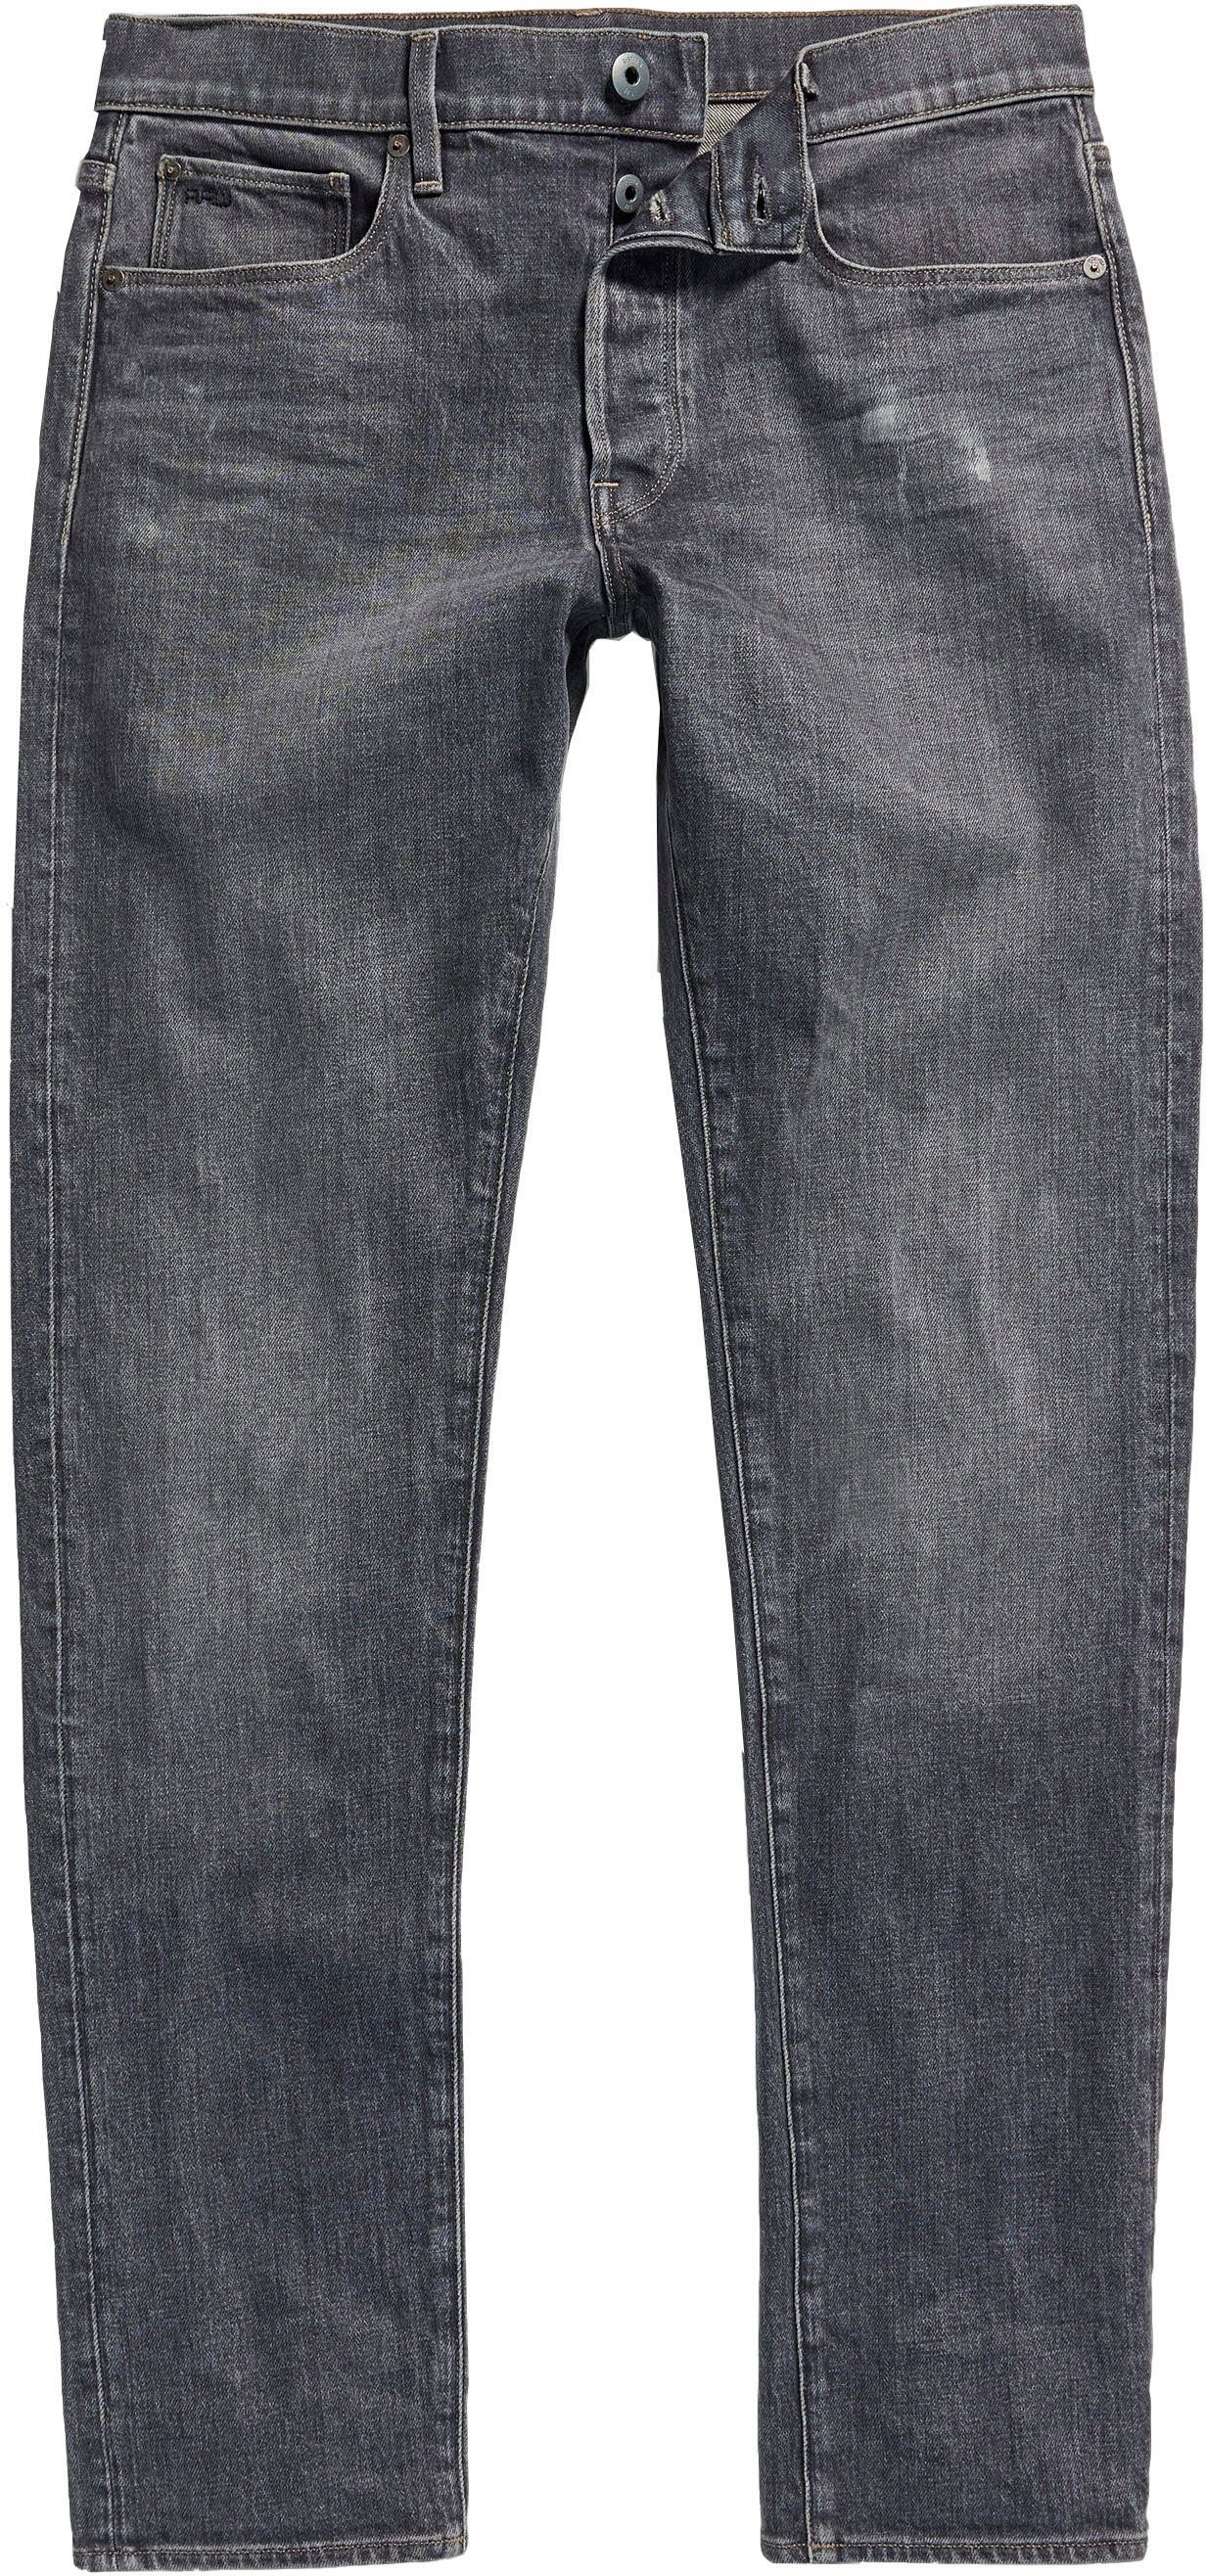 G-Star RAW Slim-fit-Jeans 3301 Slim rocket vintage sky